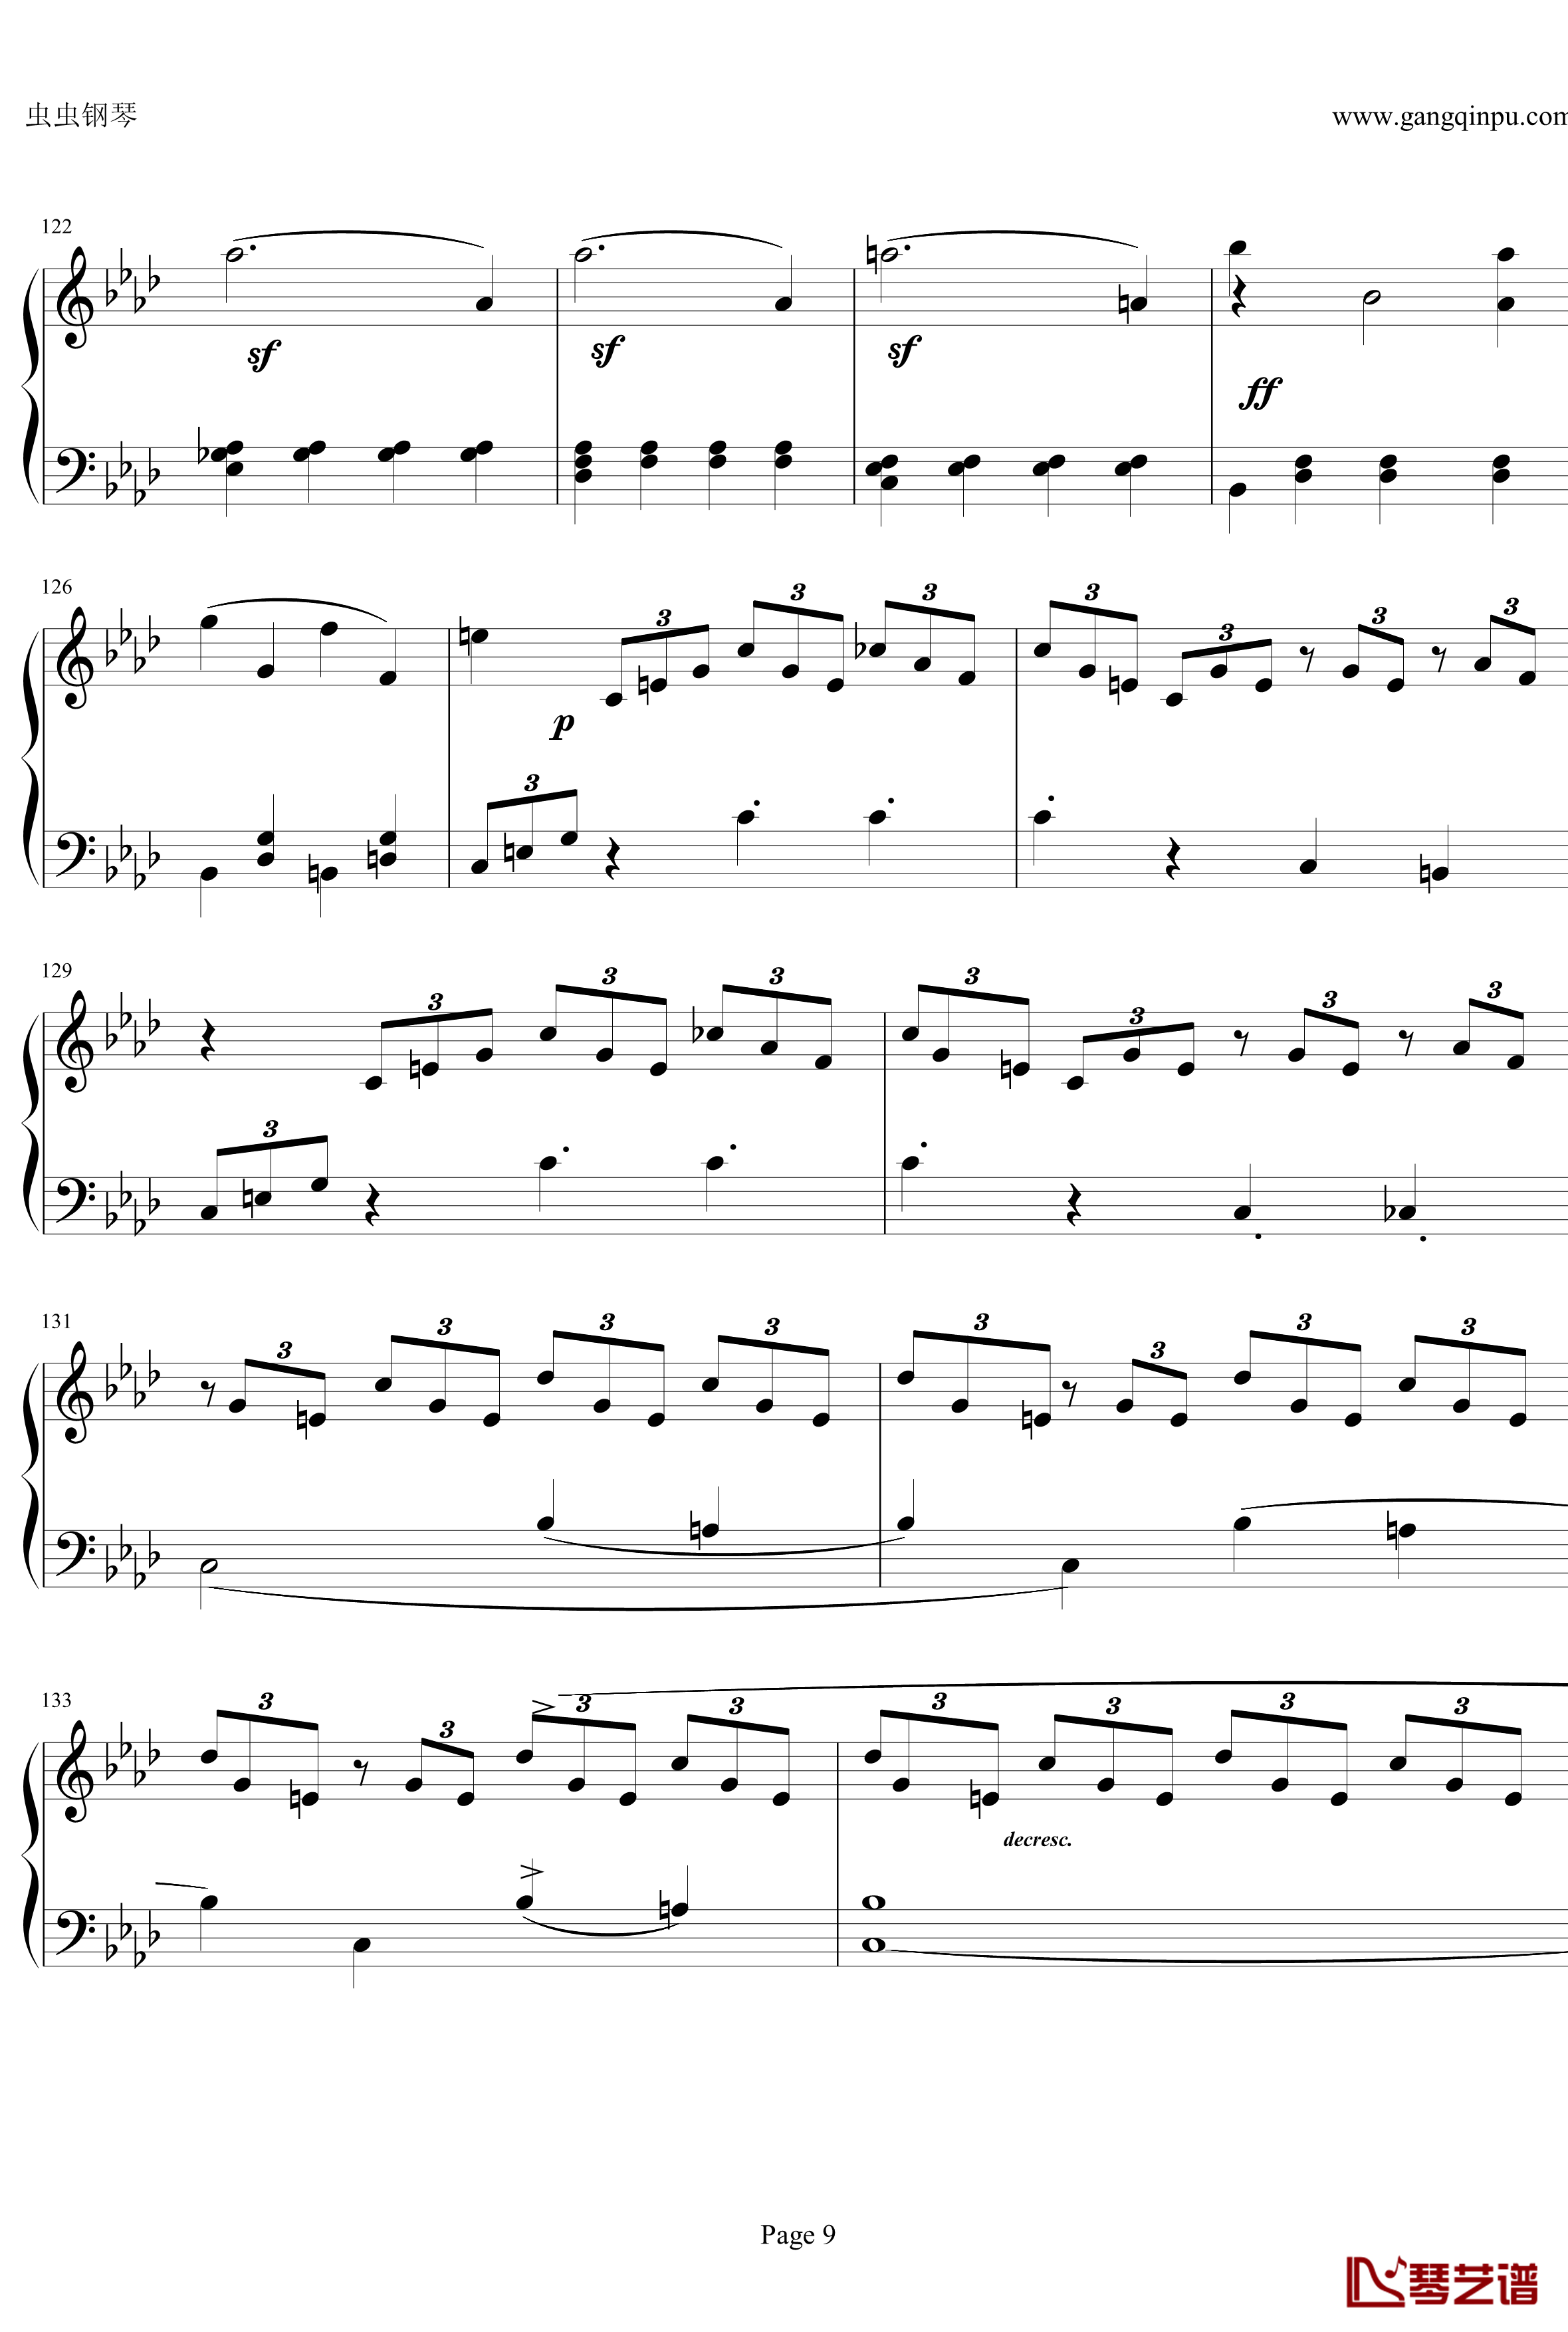 贝多芬第一钢琴奏鸣曲钢琴谱-作品2，第一号-贝多芬-beethoven9